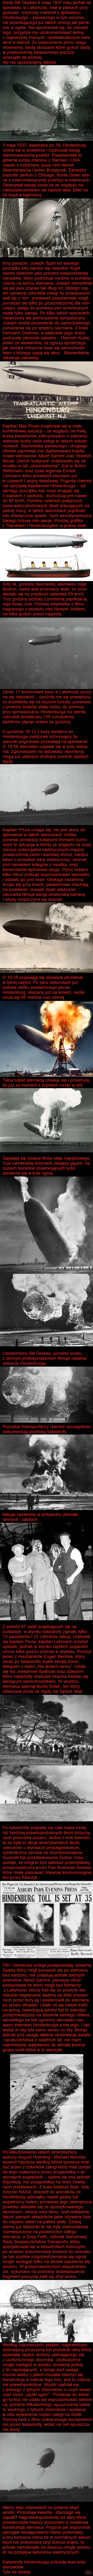 Koniec ery sterowców - ostatni lot Hindenburga